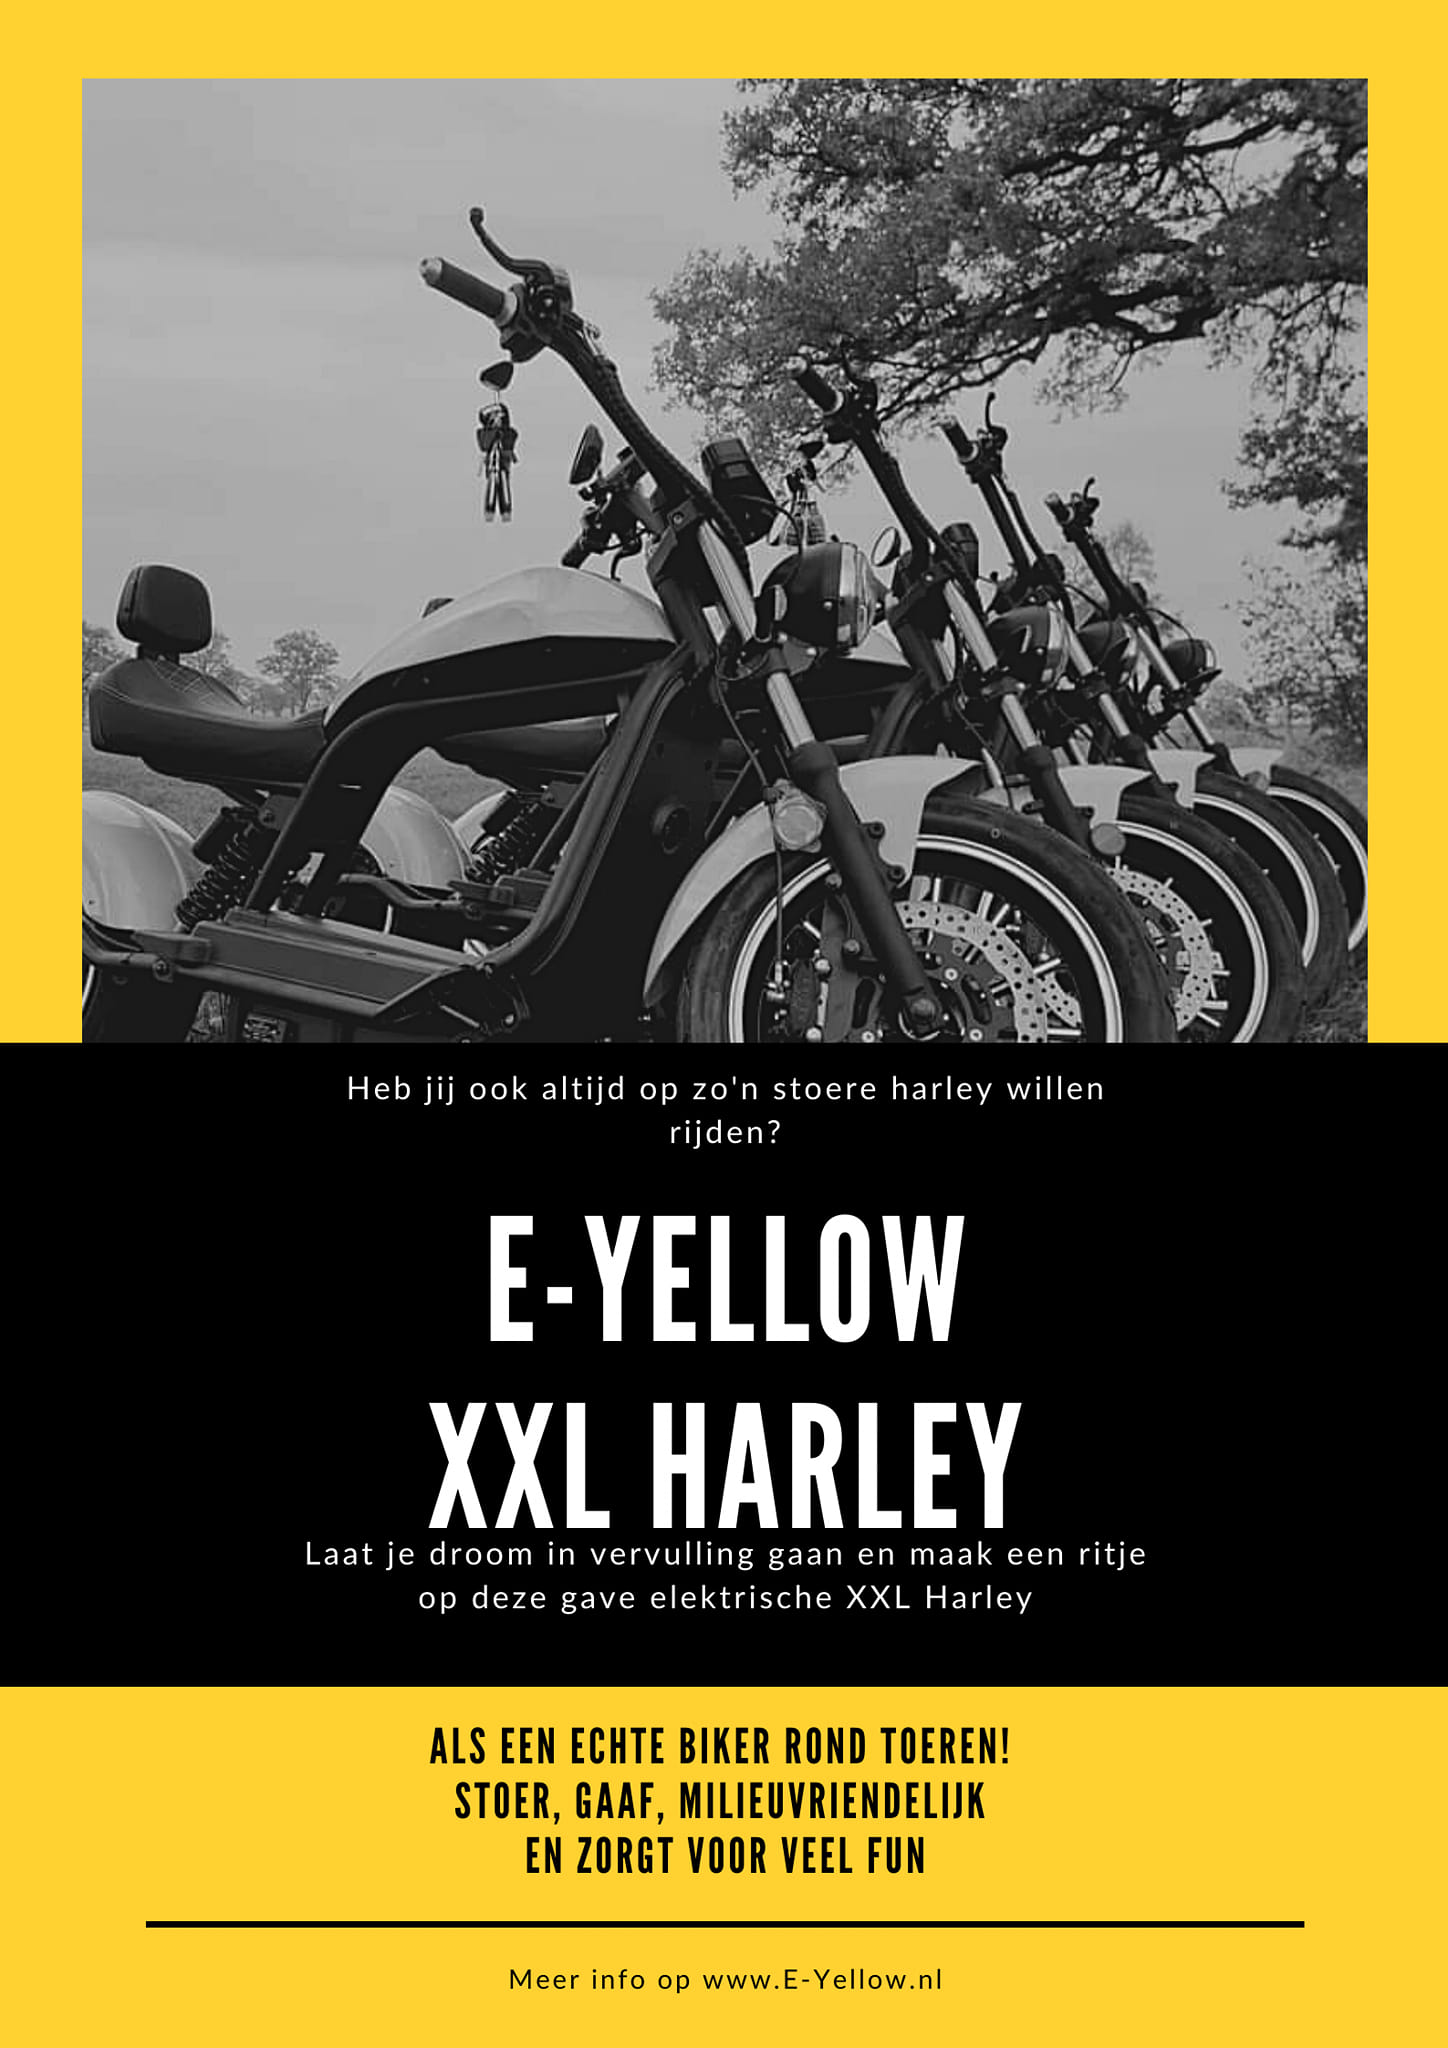 E-Yellow XXL Harley Stoer, gaaf en milieuvriendelijk